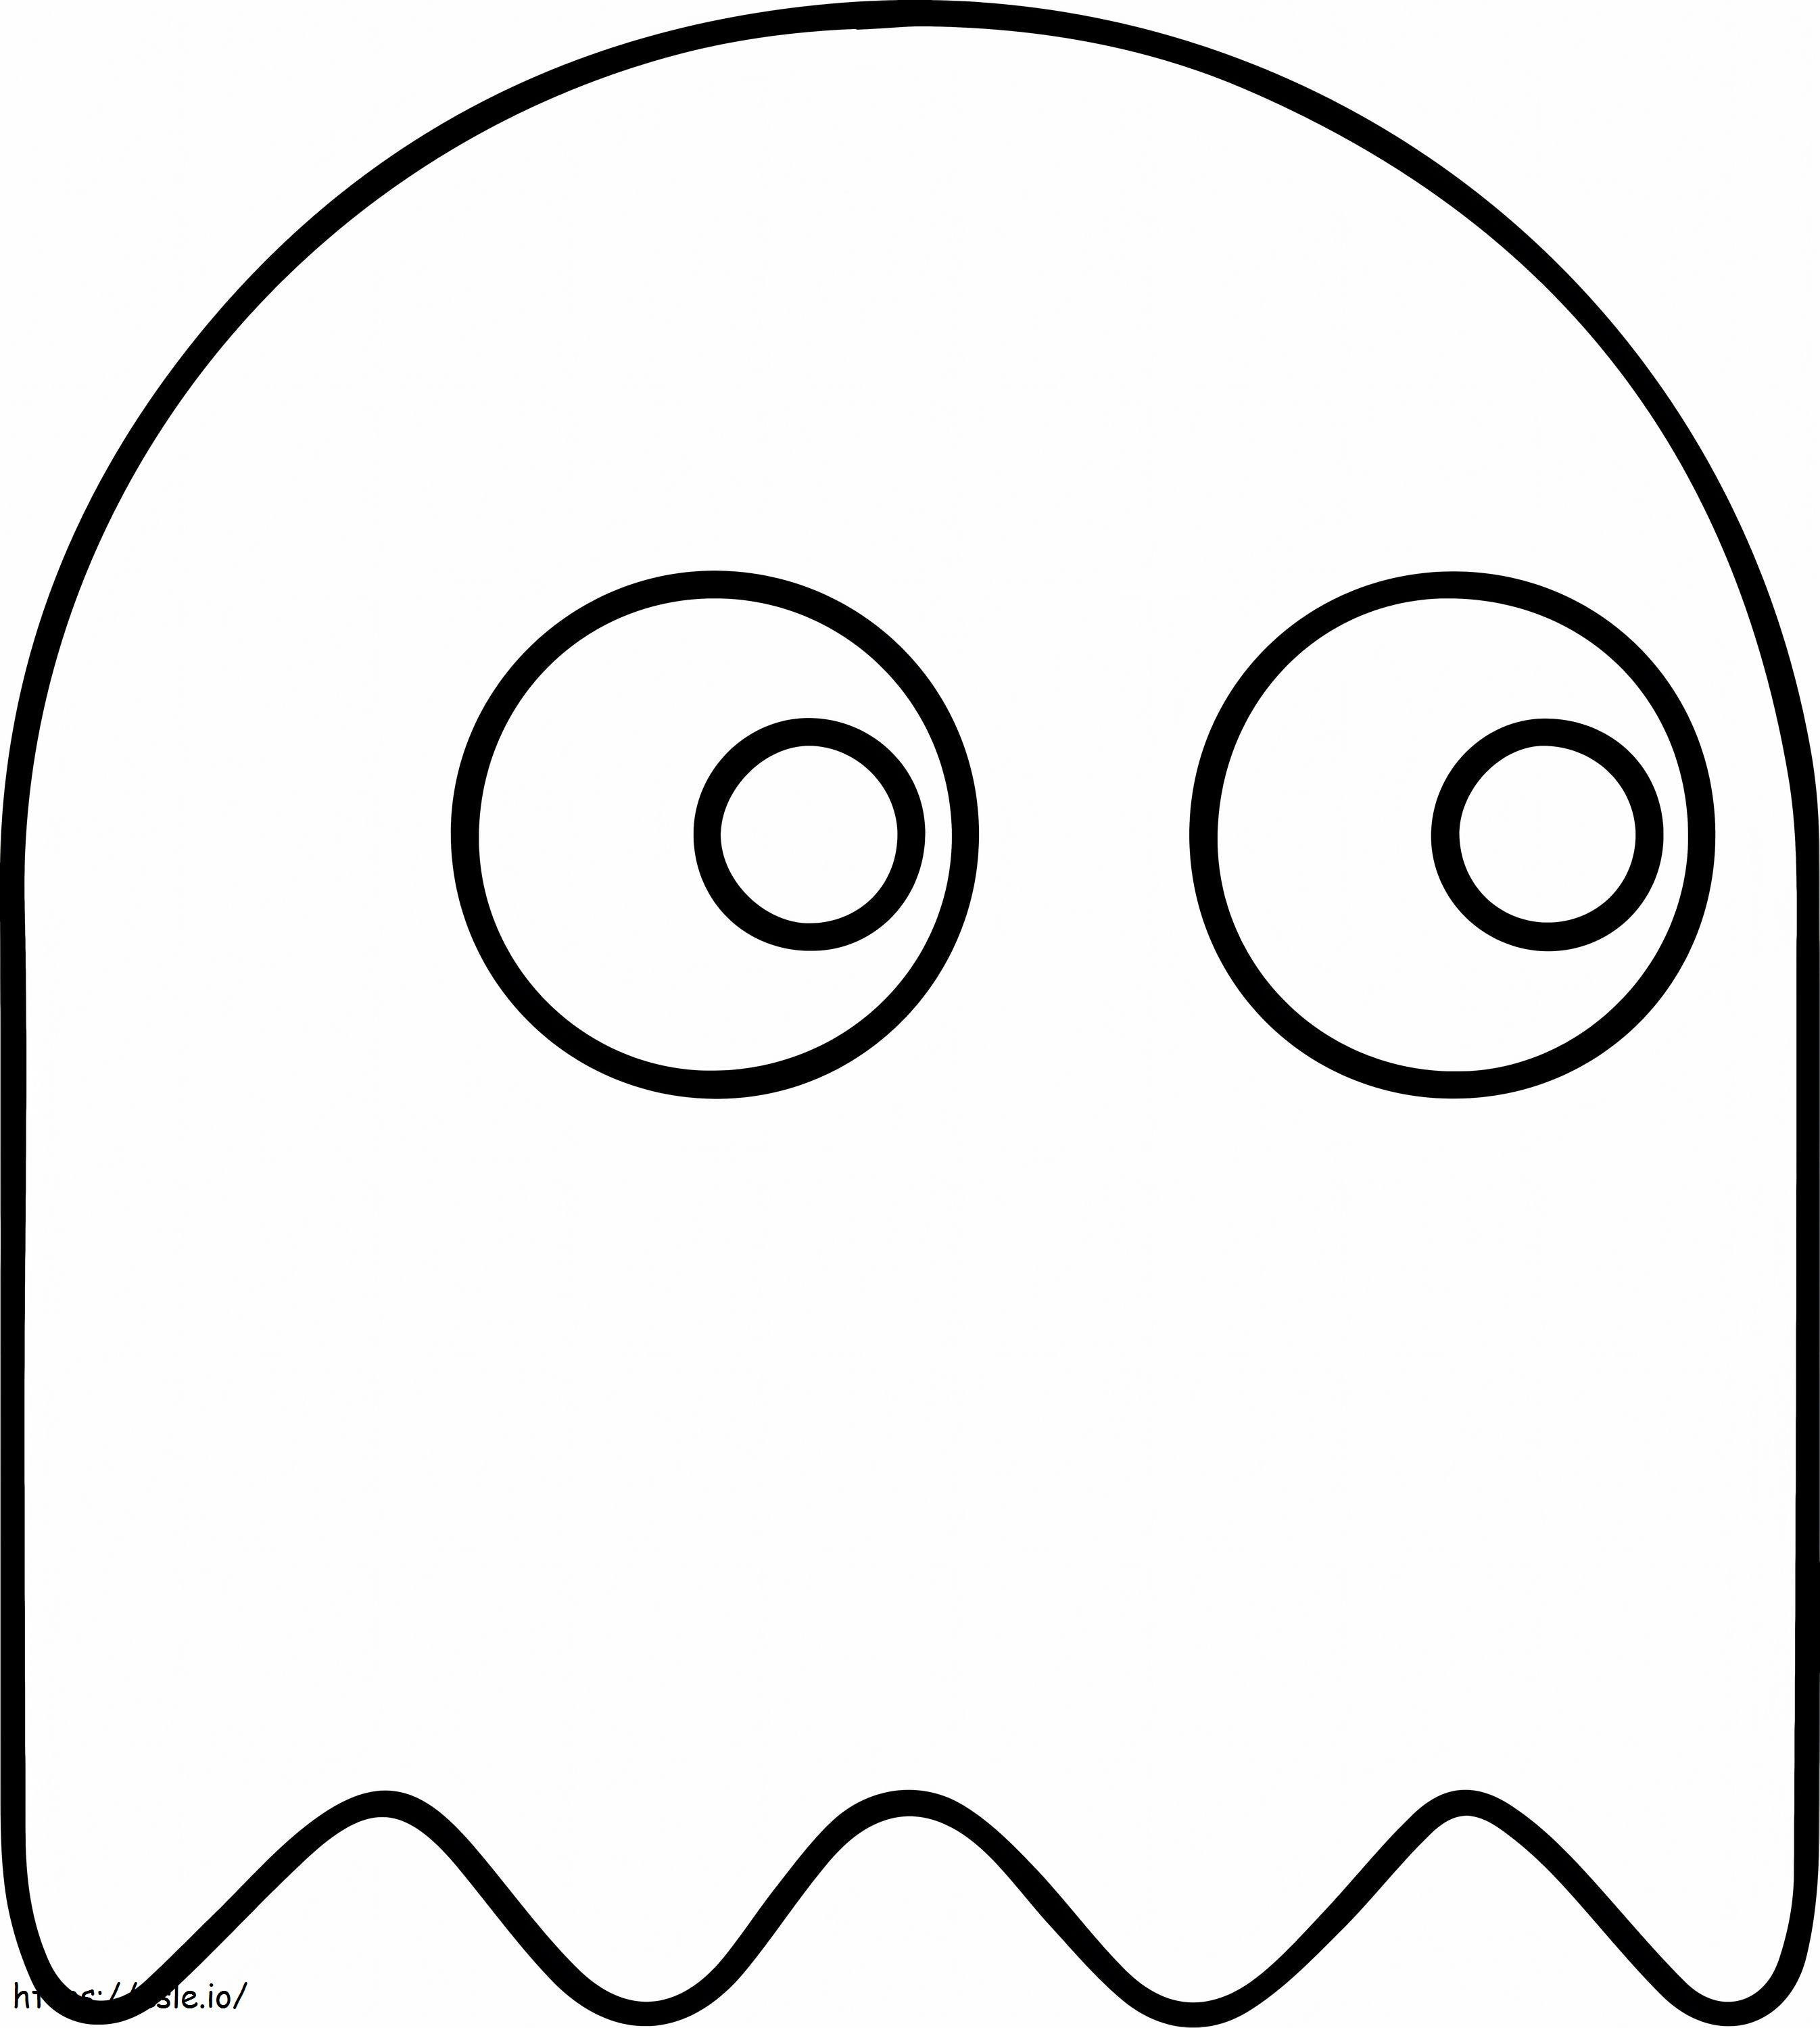  Fantasma Em Pacman A4 para colorir